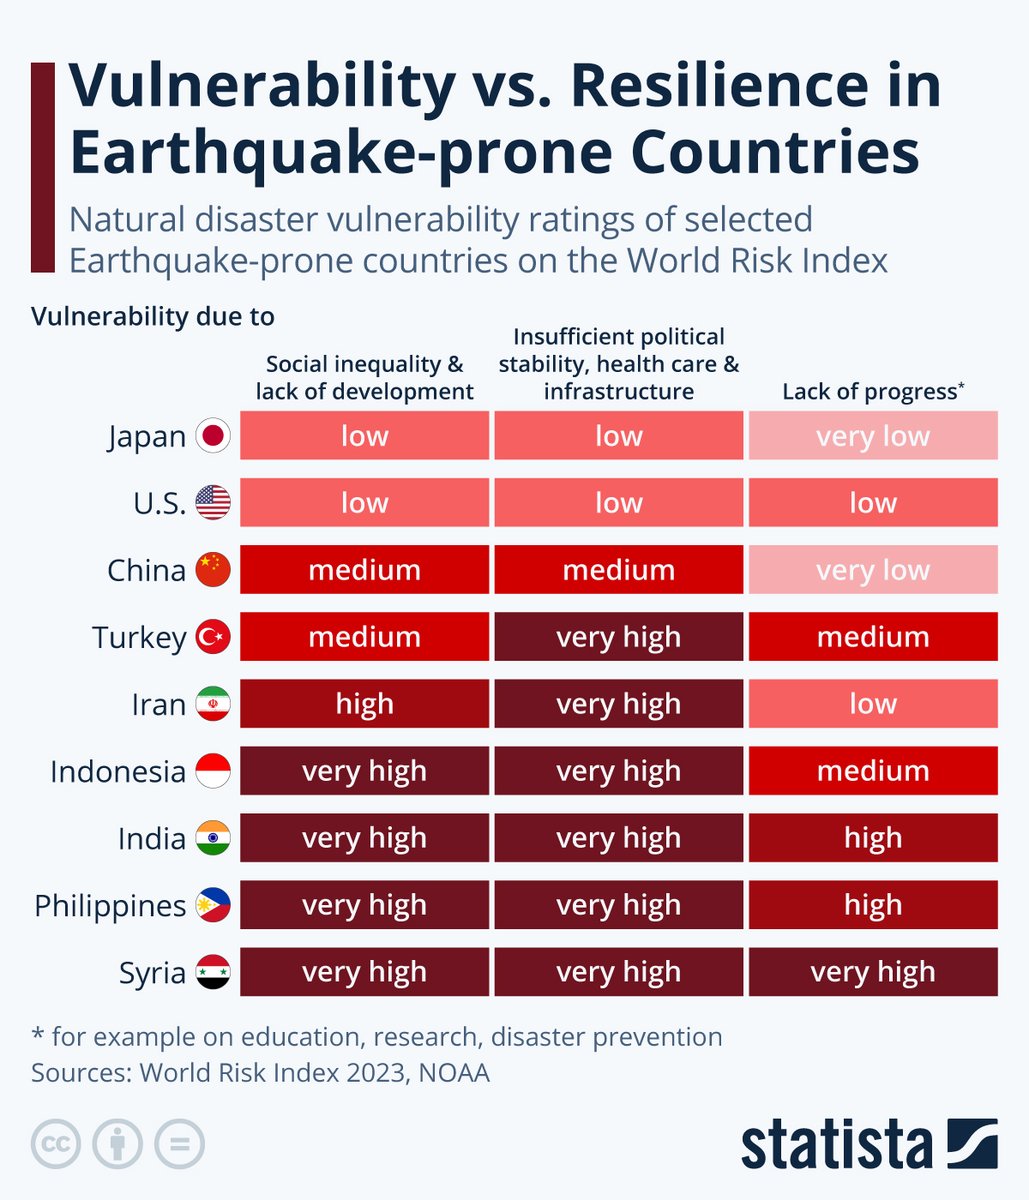 Son 30 yılda yaşadığı büyük depremlerden dersler almış ülkeler var. Hepsi de öyle çok zengin ülkeler değil. 
Şili, Meksika, Tayvan, Japonya, ... Bunlarda olan depremler artık eskisi gibi çok ölümle sonuçlanmıyor... 

Sonra bir de ders almayanlar var. Bazısı çok fakir, bazısı ise…